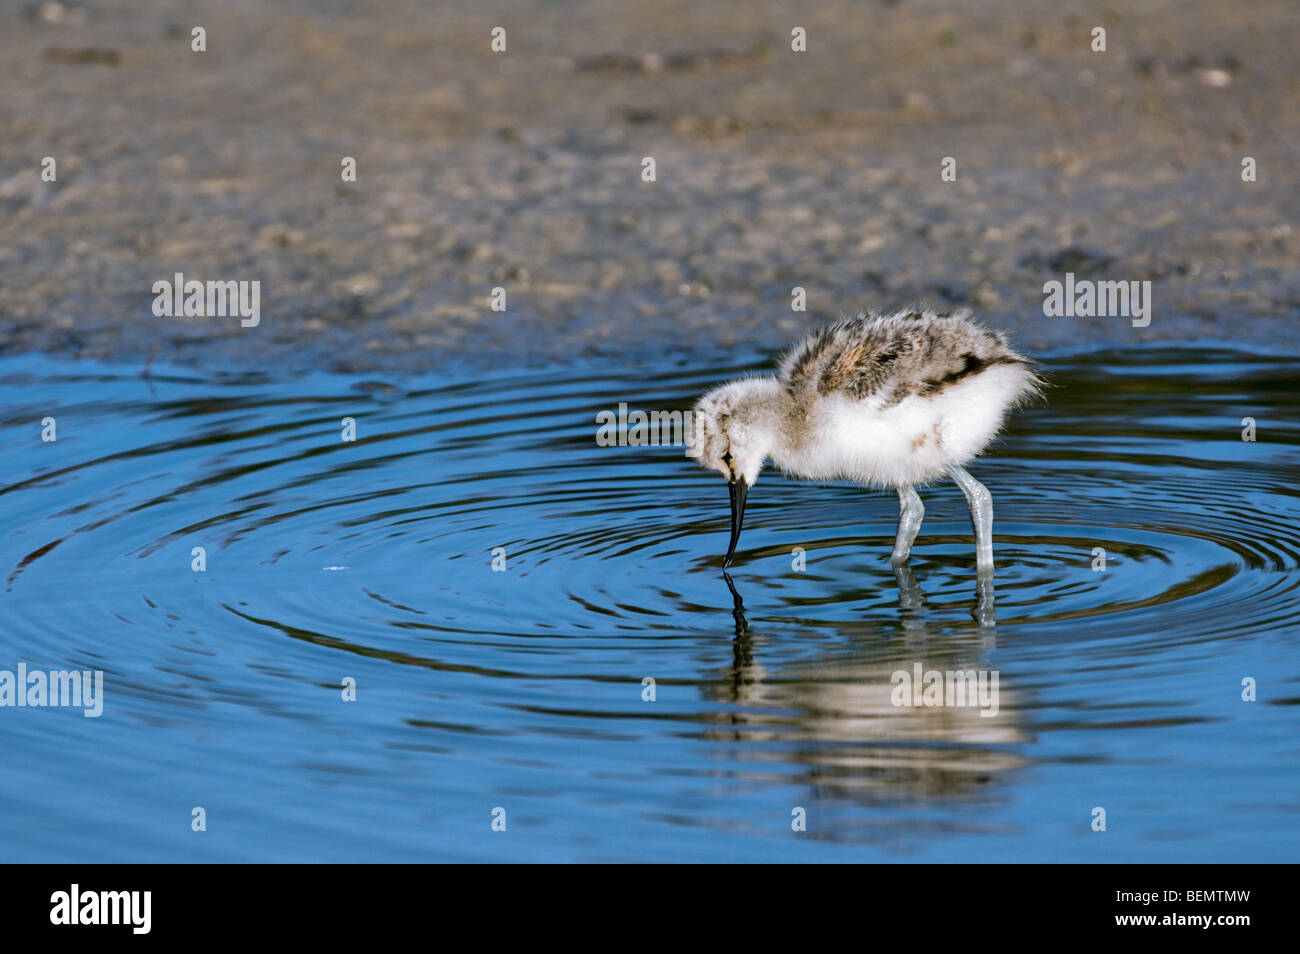 Pied Avocet chick (Recurvirostra avosetta) foraging in shallow water, Belgium Stock Photo